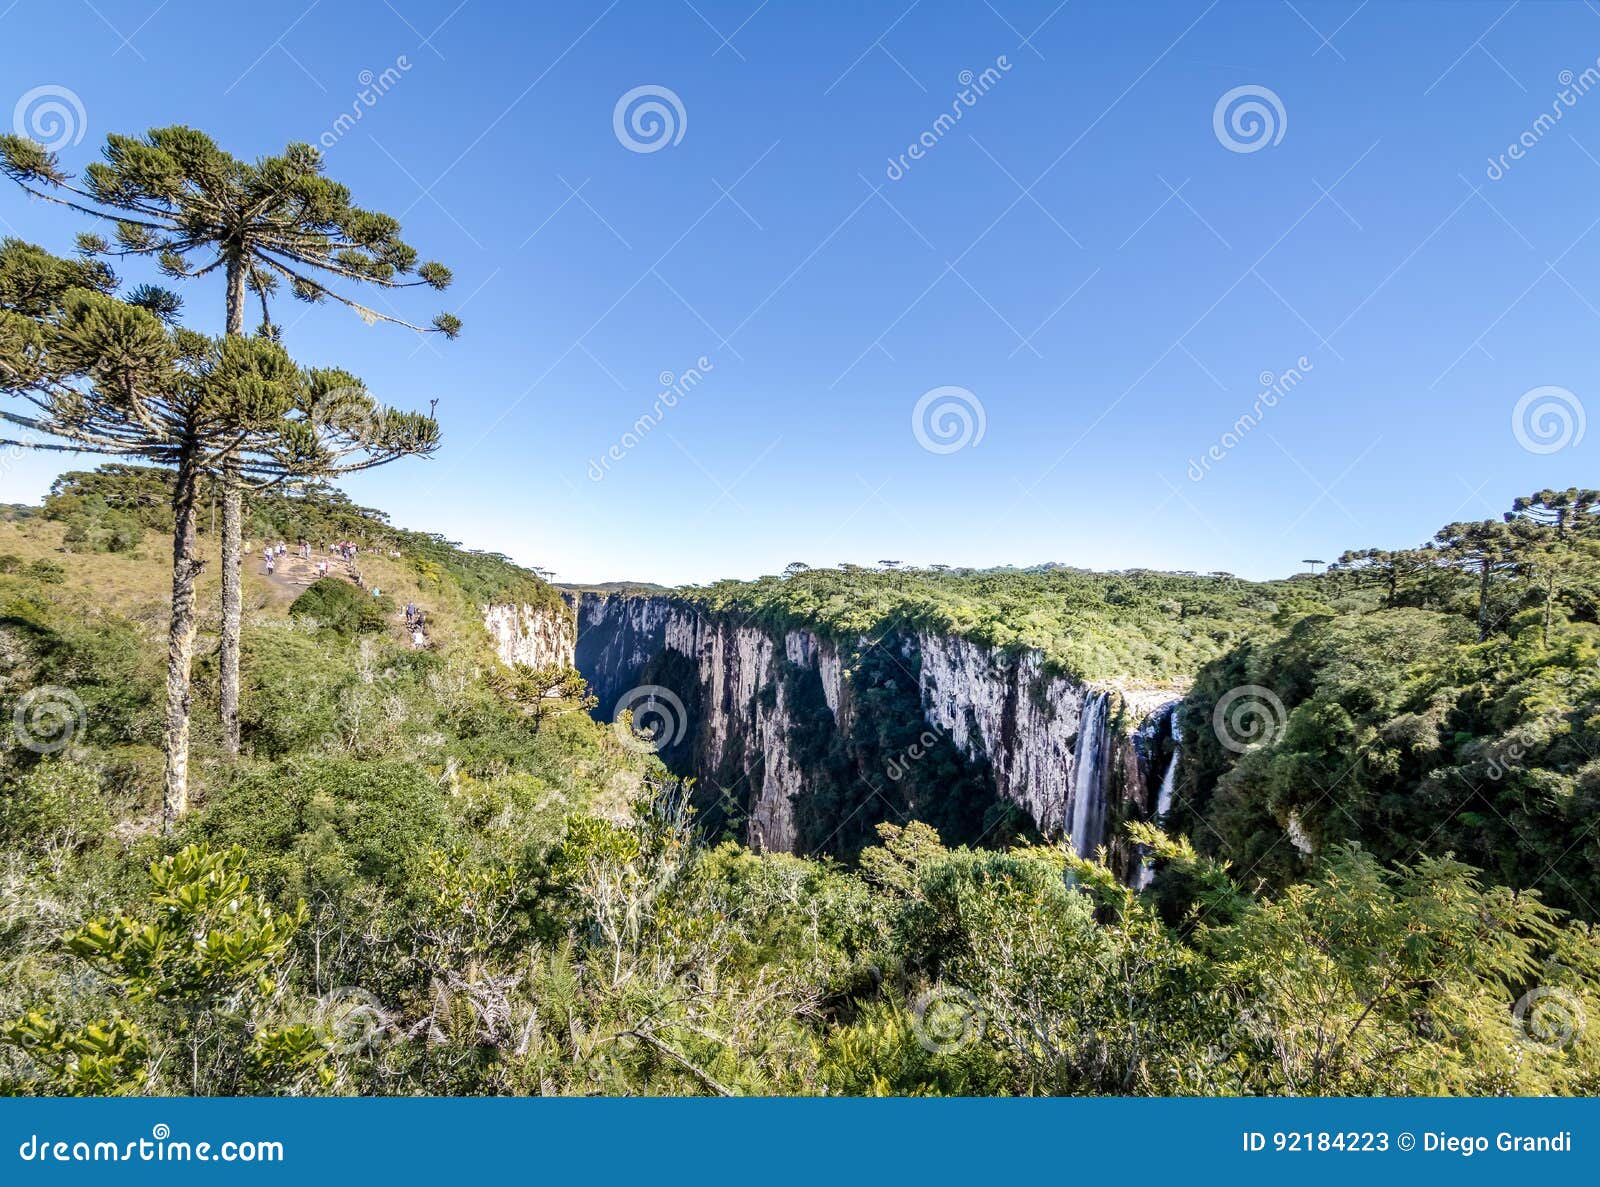 panoramic view of waterfall in itaimbezinho canyon at aparados da serra national park - cambara do sul, rio grande do sul, brazil